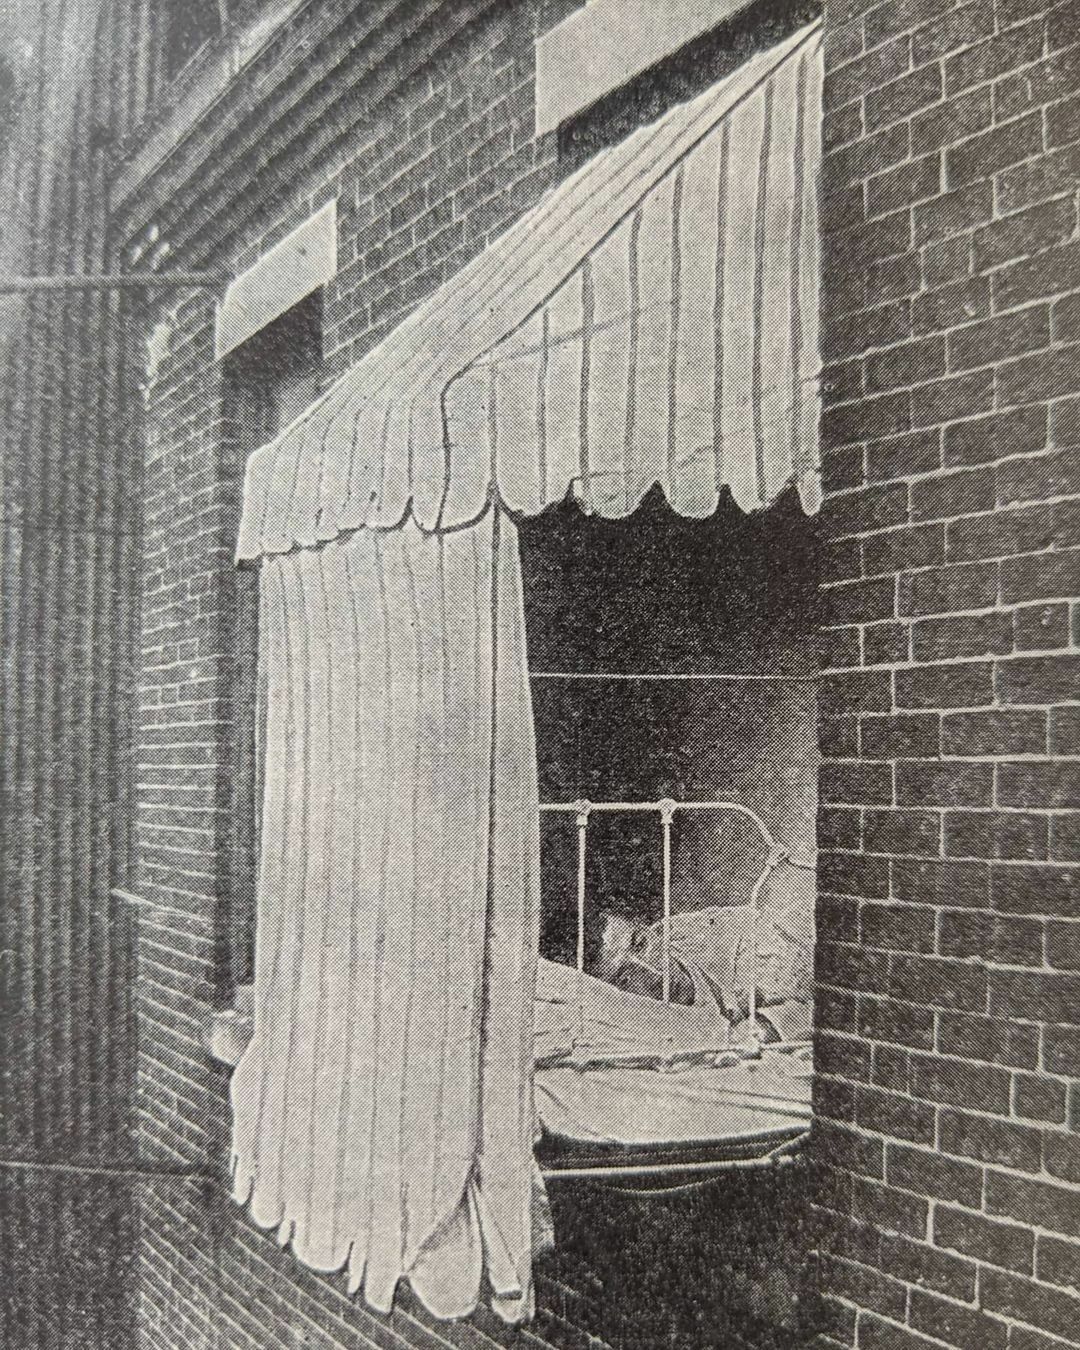 La tente à fenêtre a été conçue à l’origine pour permettre aux patients de suivre le traitement de la tuberculose en plein air, chez eux, lorsqu’ils ne pouvaient pas utiliser de porches ou d’autres bâtiments ouverts à cette fin, dans les années 1910.